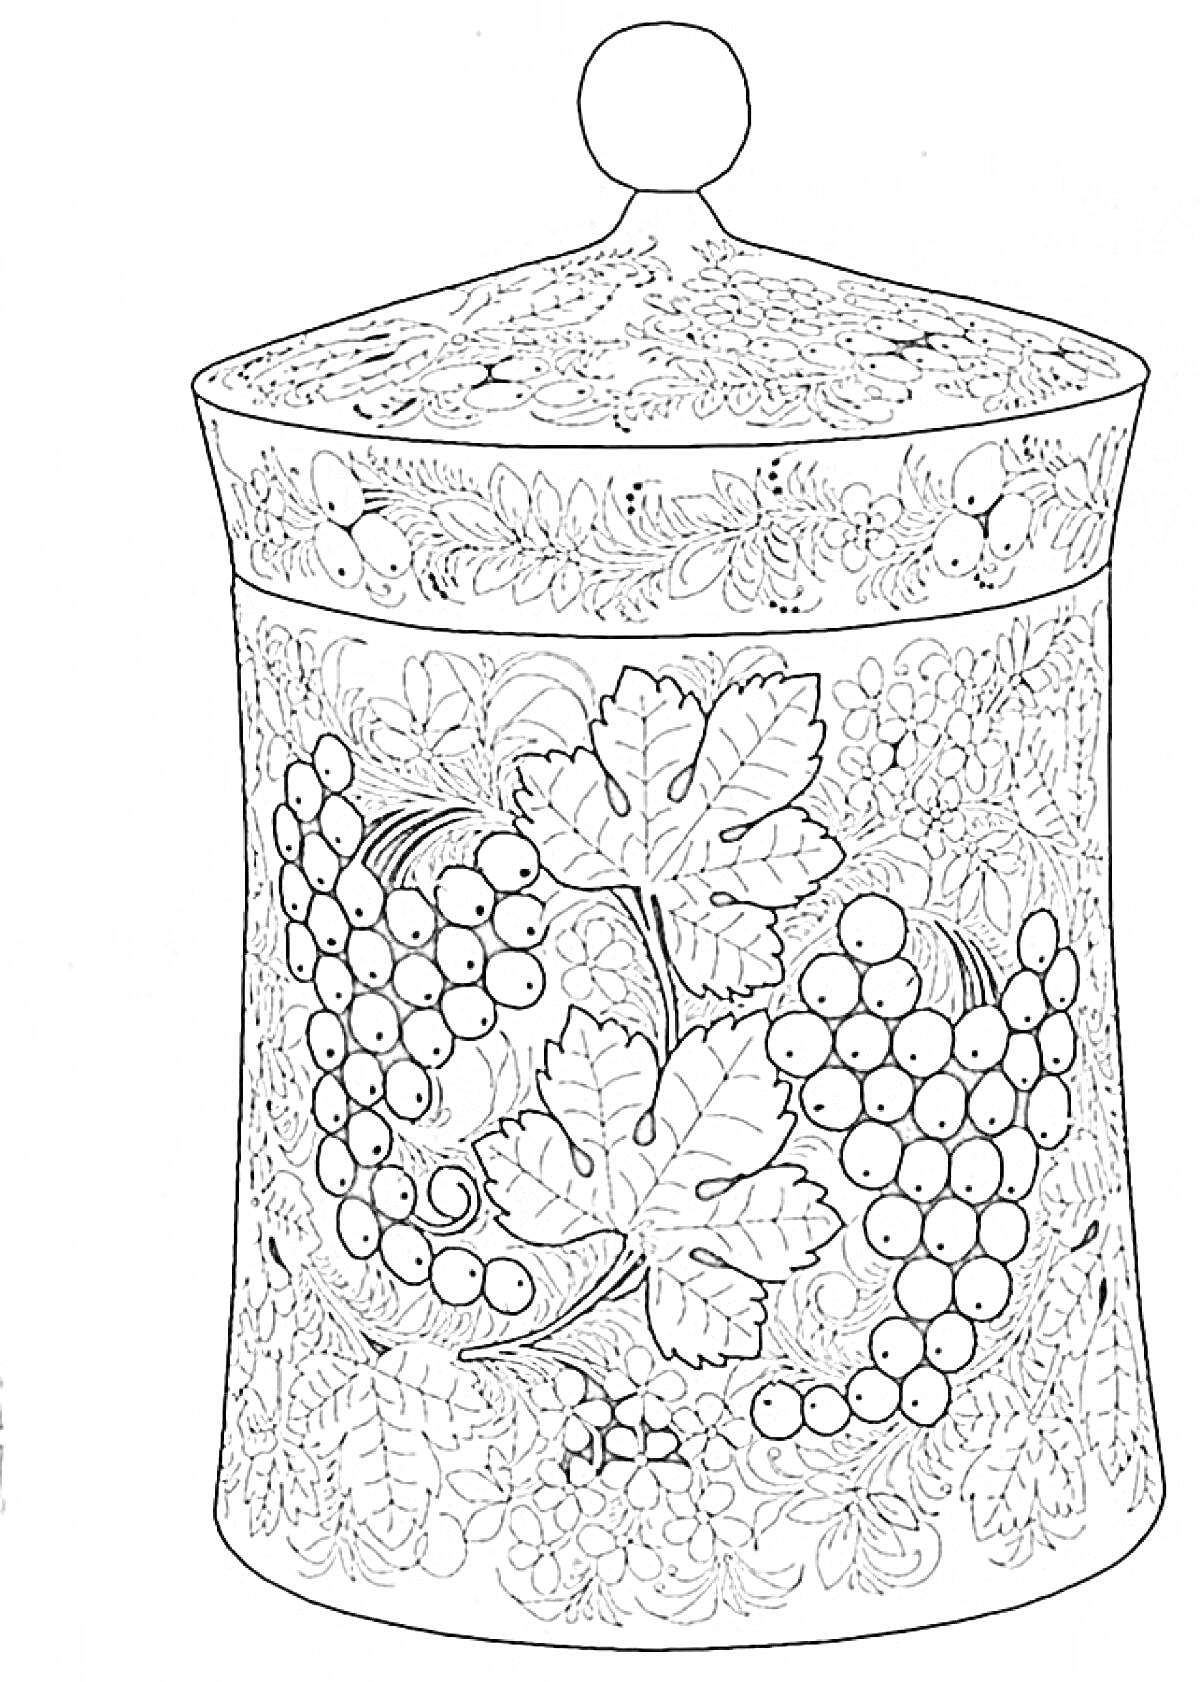 Хохломская расписная банка с крышкой, украшенная виноградом и листьями